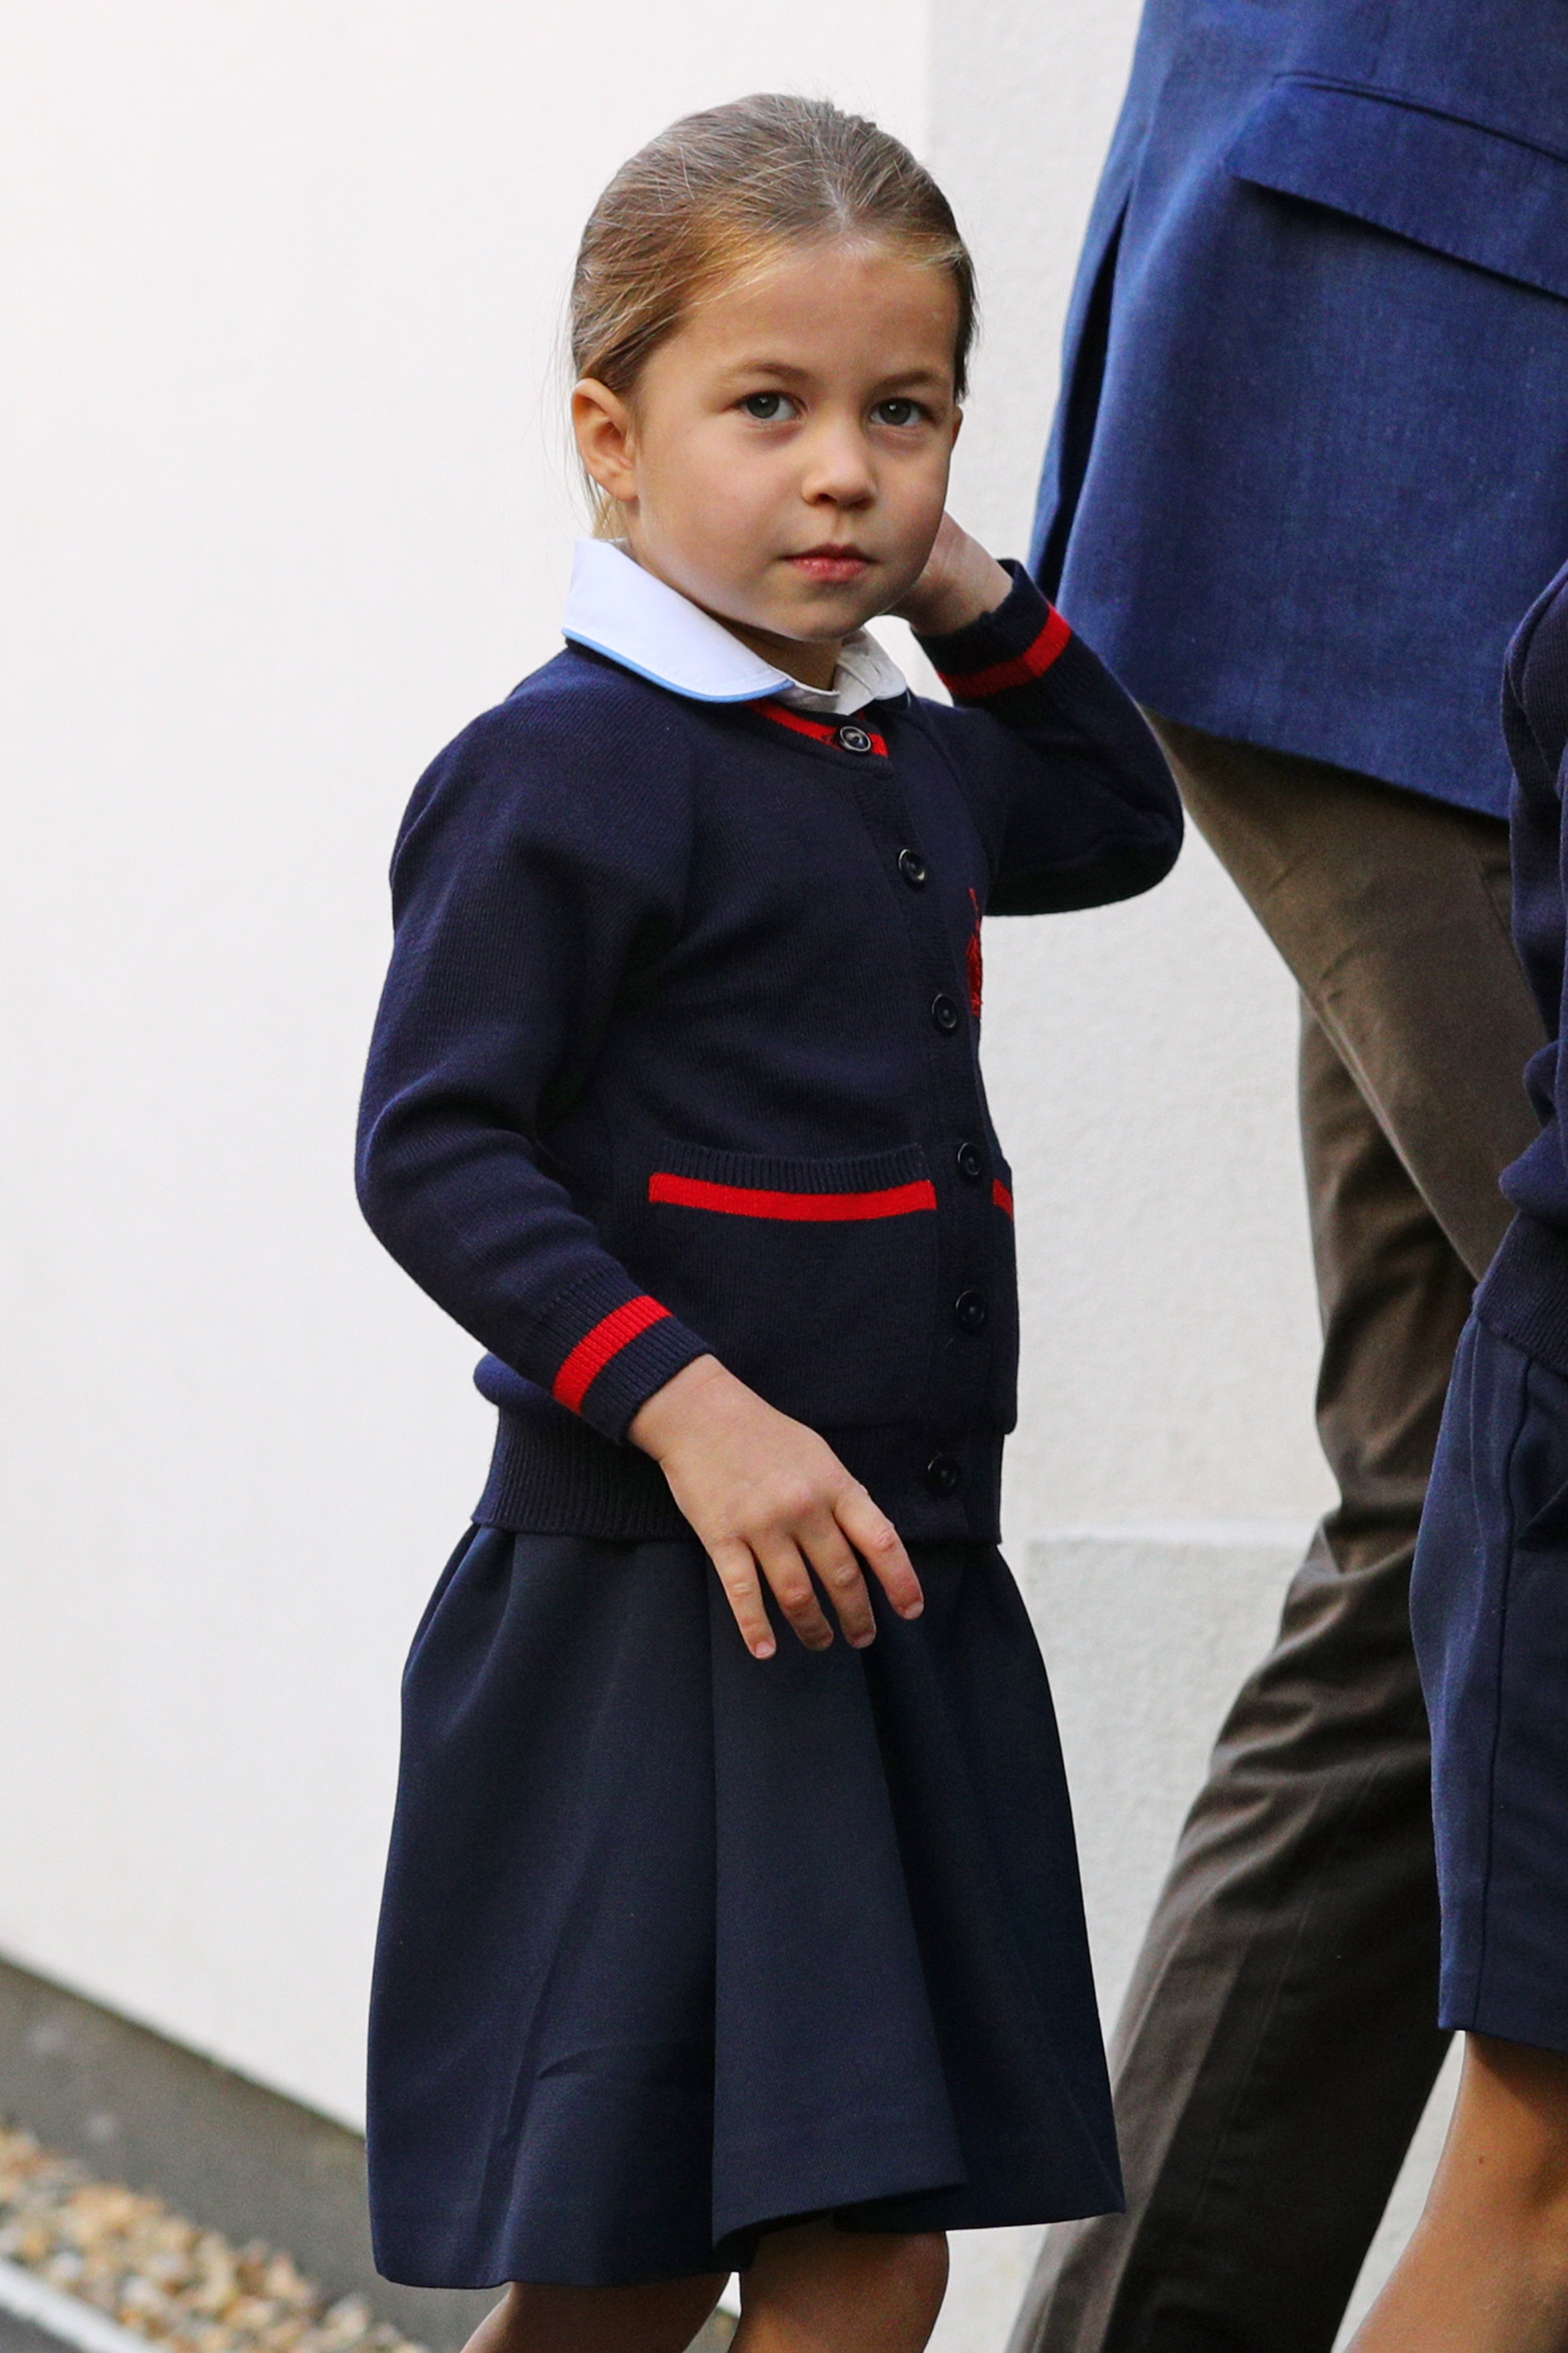 La princesse Charlotte arrivant pour son premier jour d'école à Thomas's Battersea, le 5 septembre 2019, à Londres, en Angleterre. | Source : Getty Images